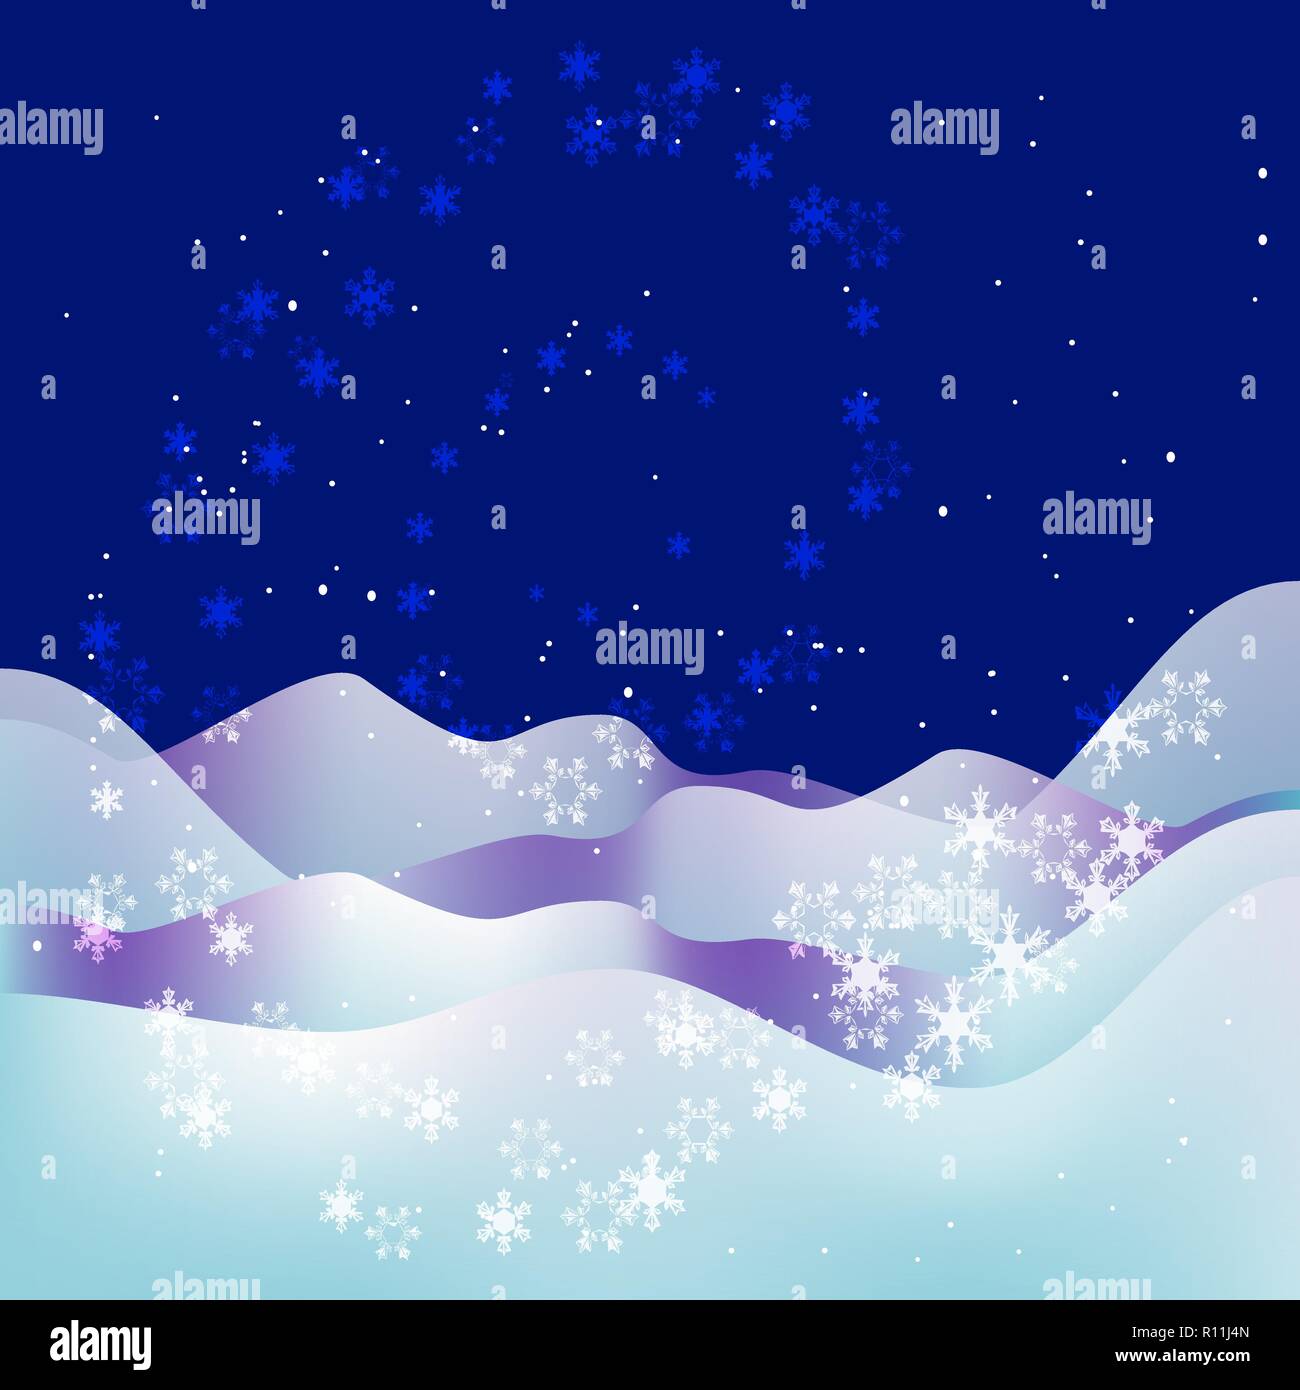 Trendy Weihnachten und Neues Jahr blauen Hintergrund. Xmas Night. Schnee, Schneeflocken, Sterne und Schneeverwehungen. Abstrakte Weihnachten Hintergrund mit Winterlandschaft Stock Vektor